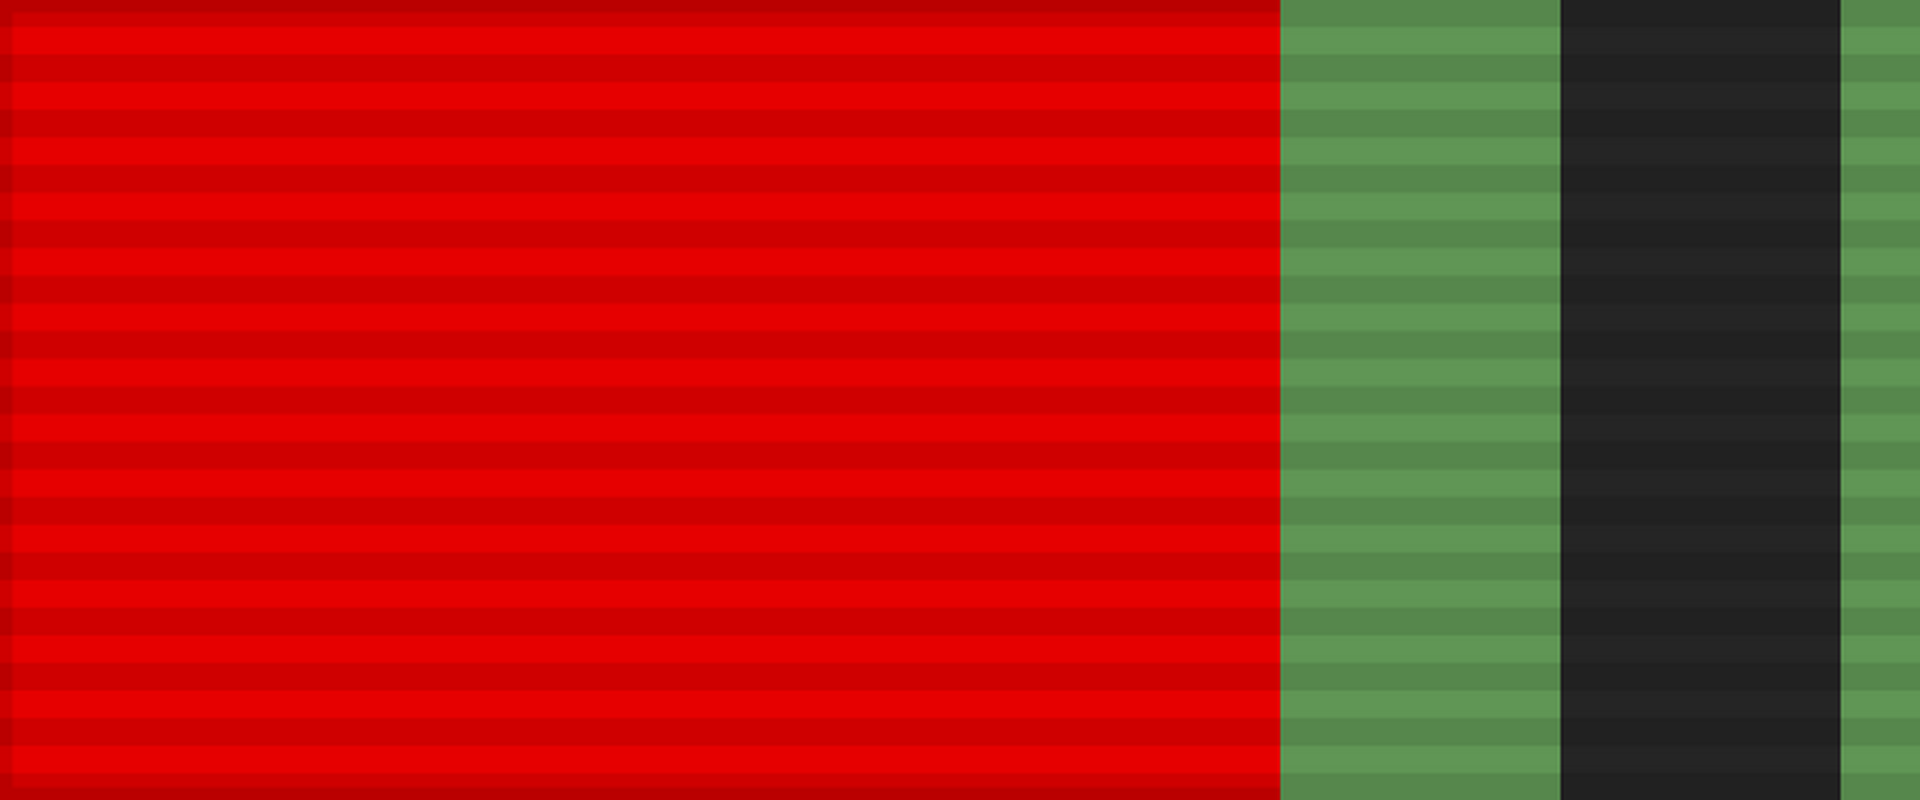 Лента медали «Двадцать лет Победы в Великой Отечественной войне 1941—1945 гг.». СССР.